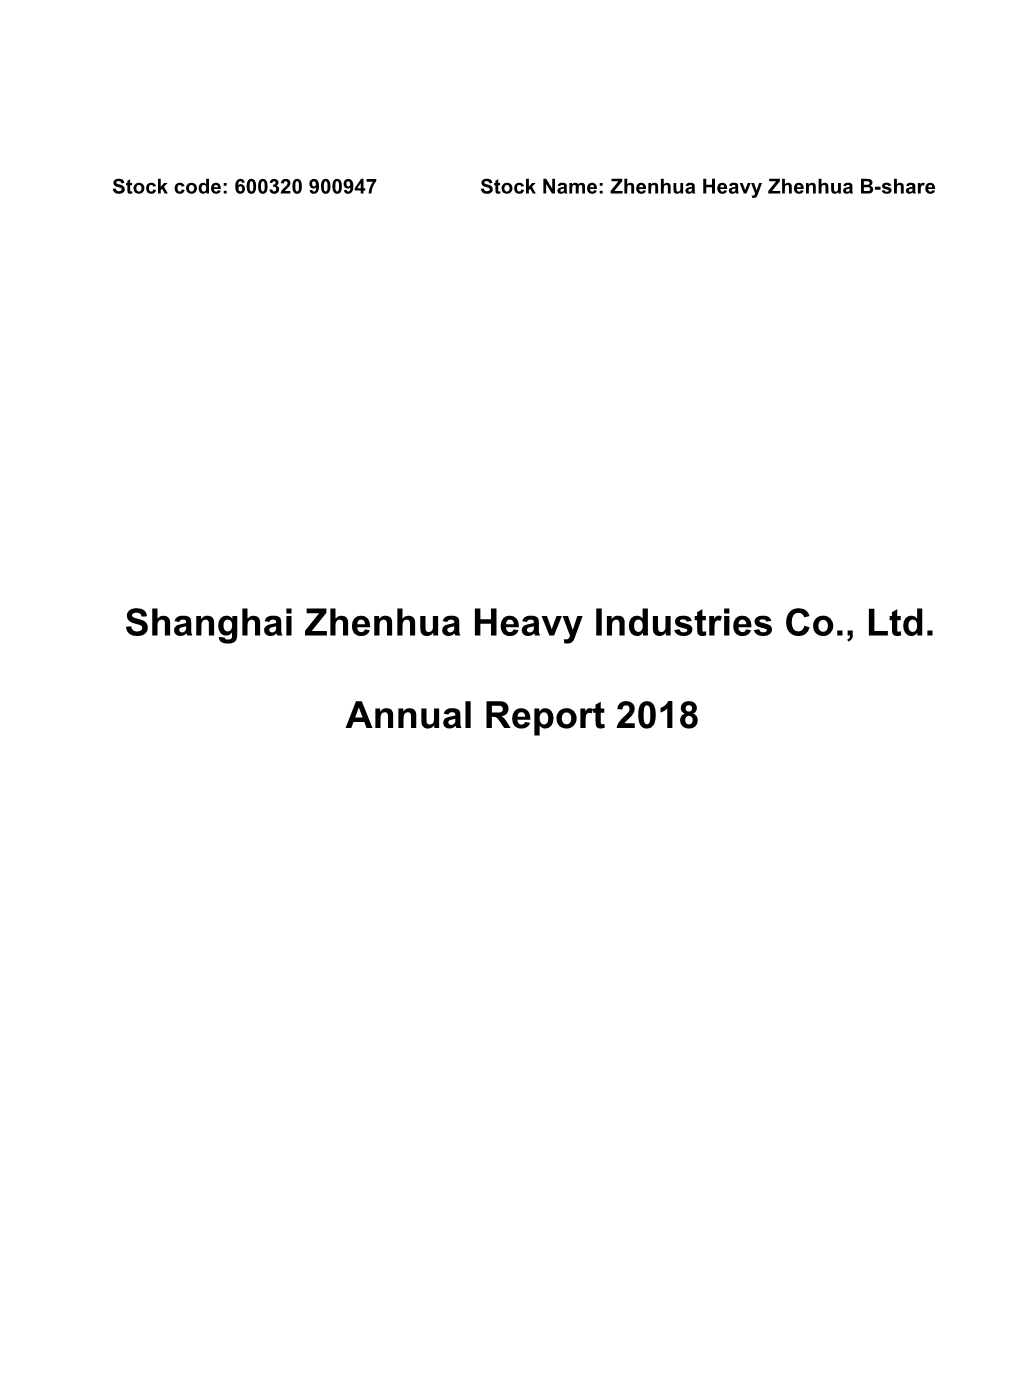 1. Shanghai Zhenhua Heavy Industries Co., Ltd. Annual Report